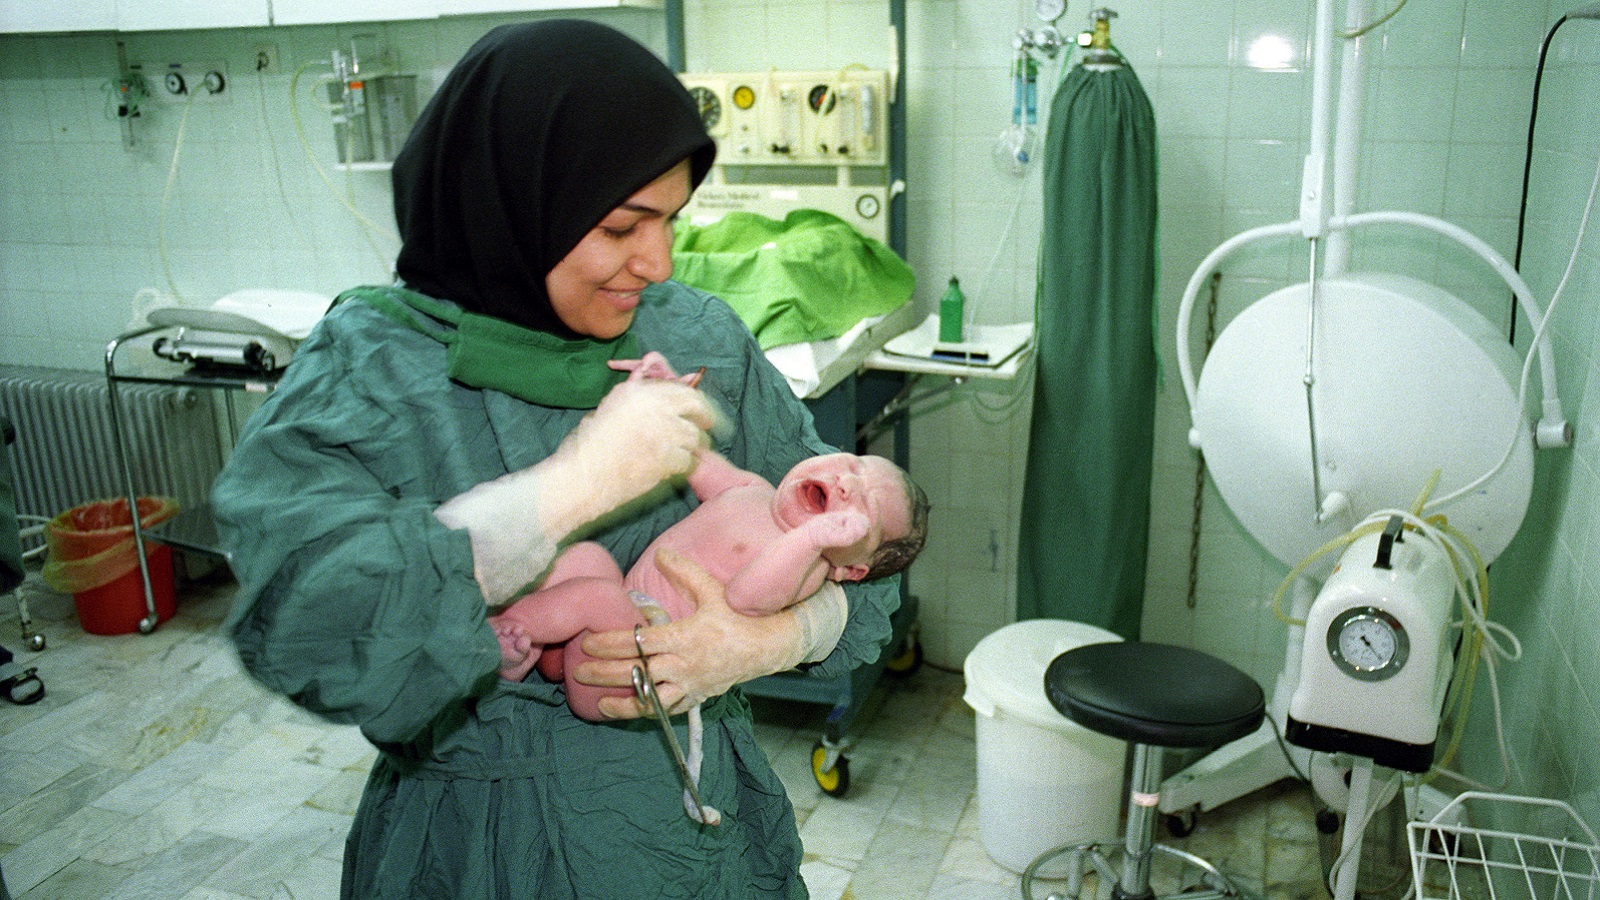 إيران: مواقع التواصل مسؤولة عن تزايد الإجهاض!